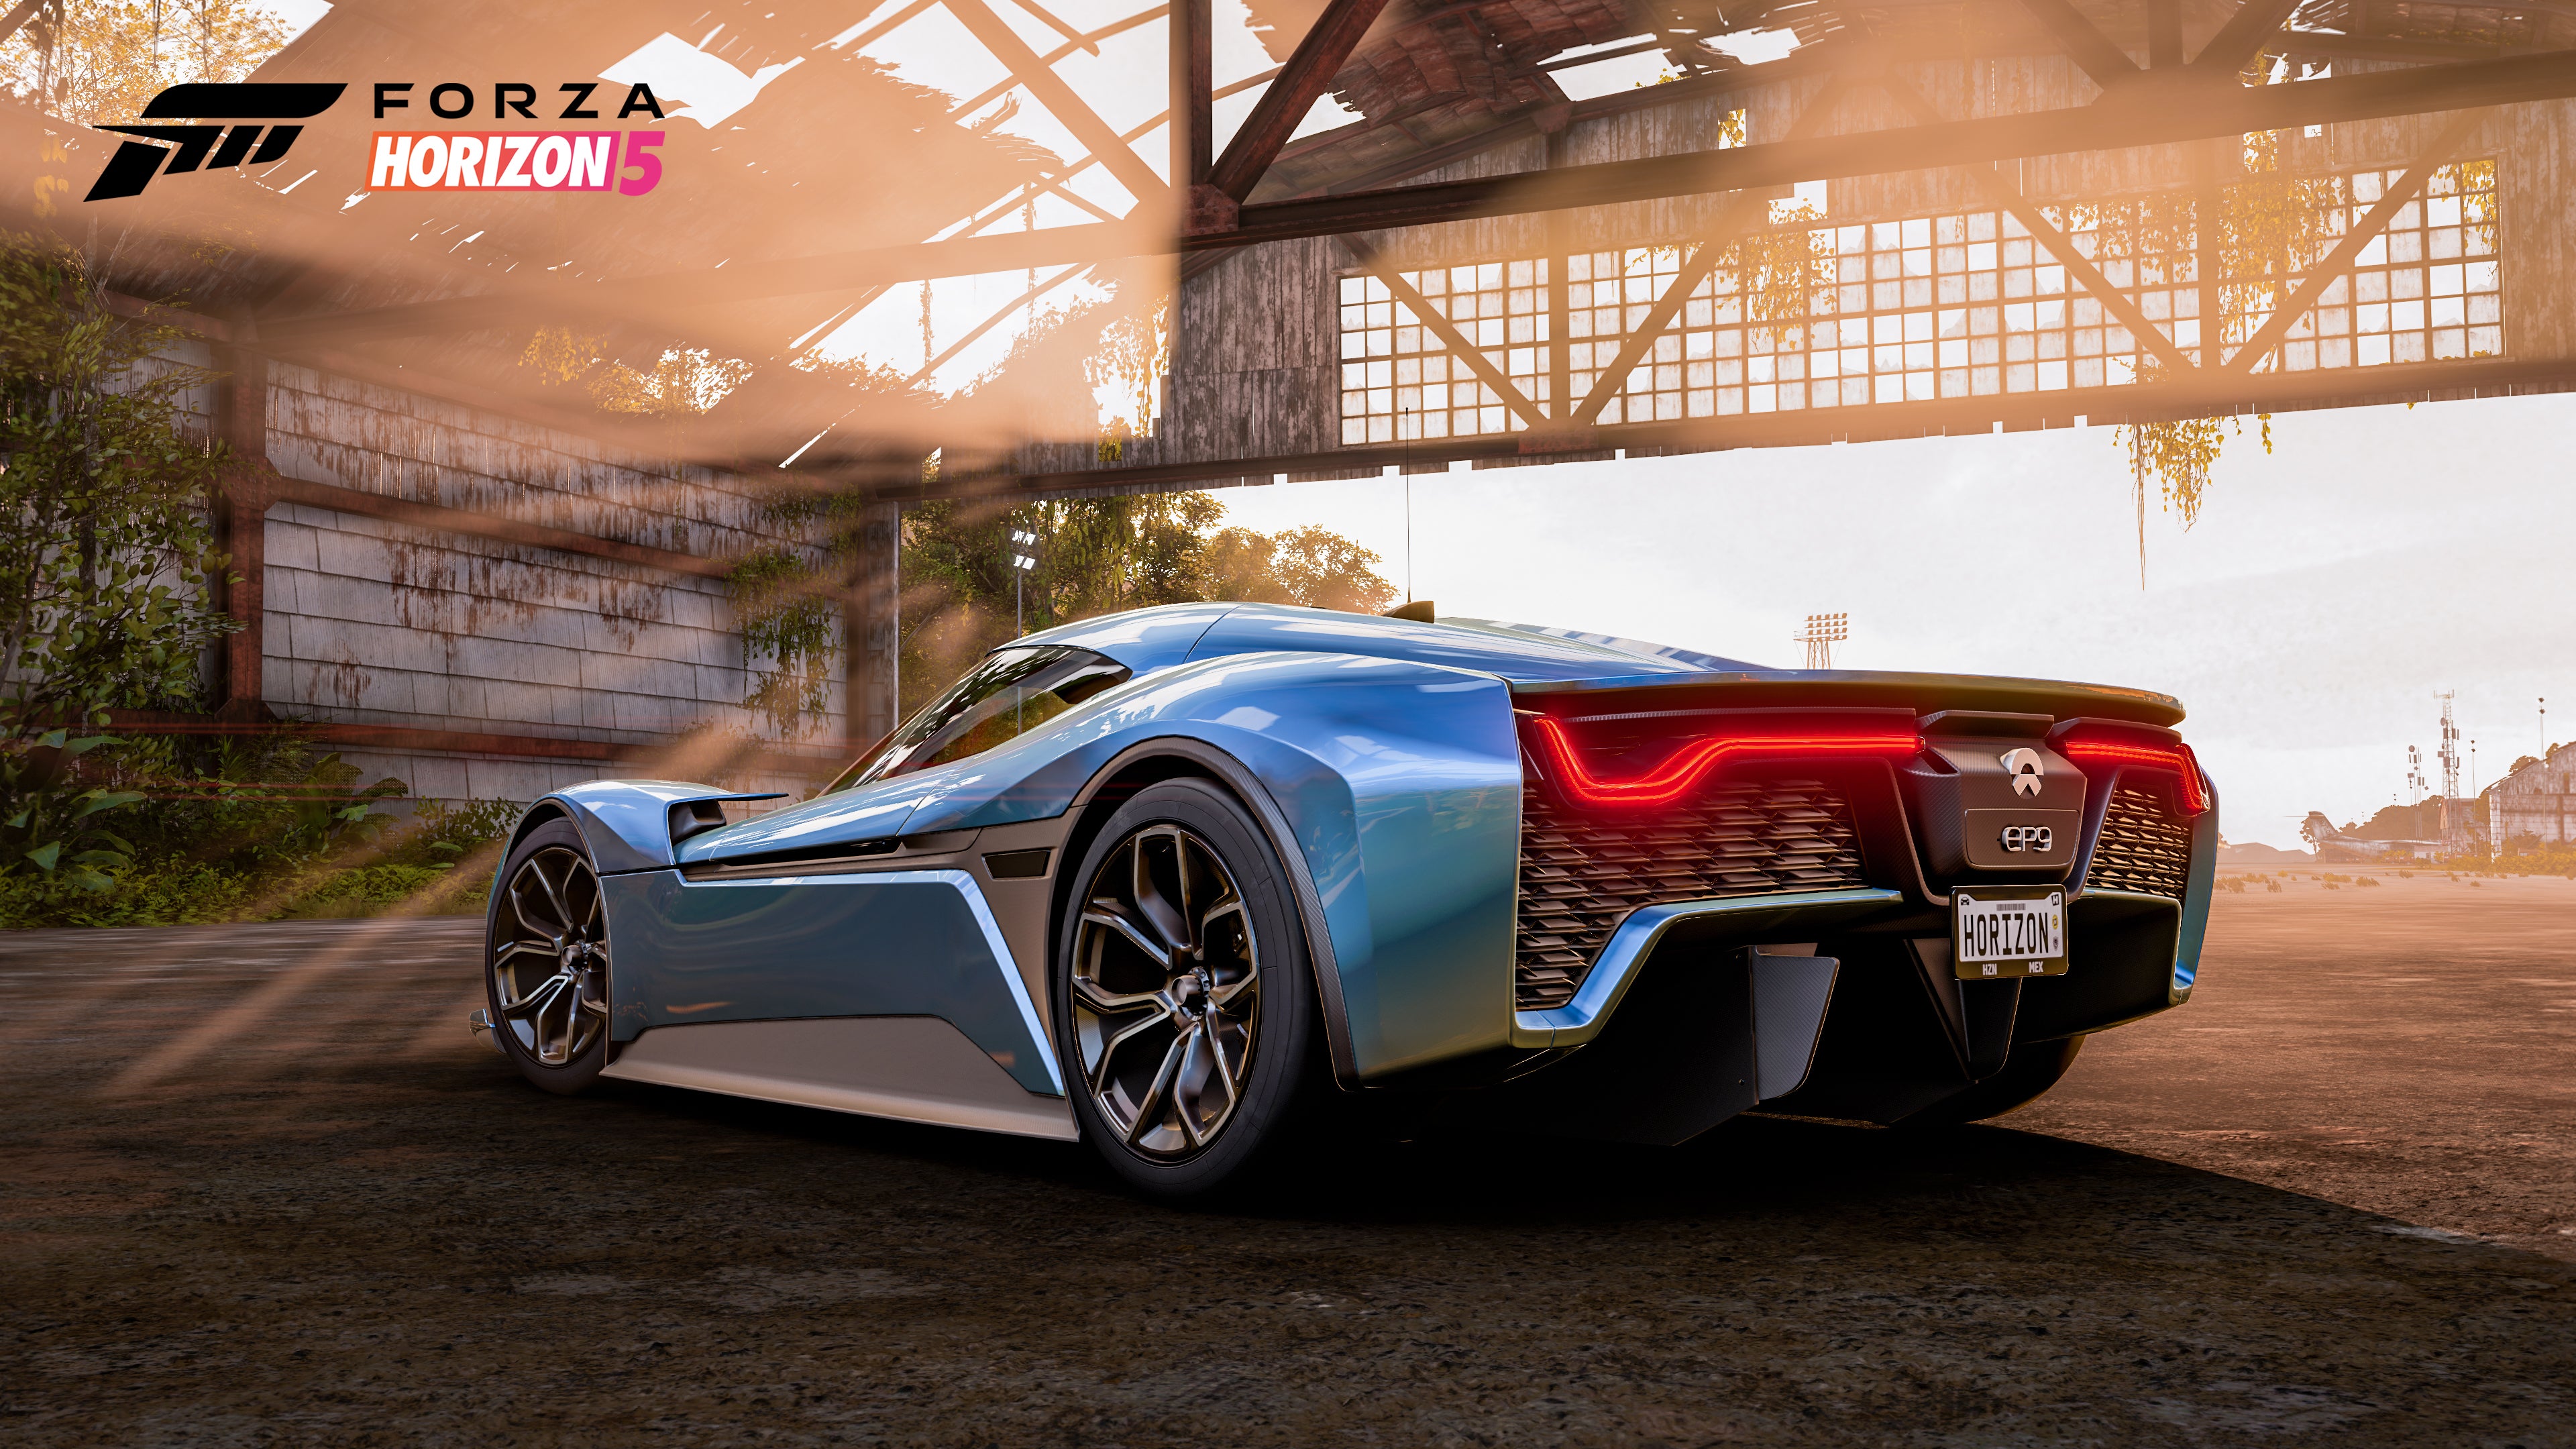  Forza Horizon 5